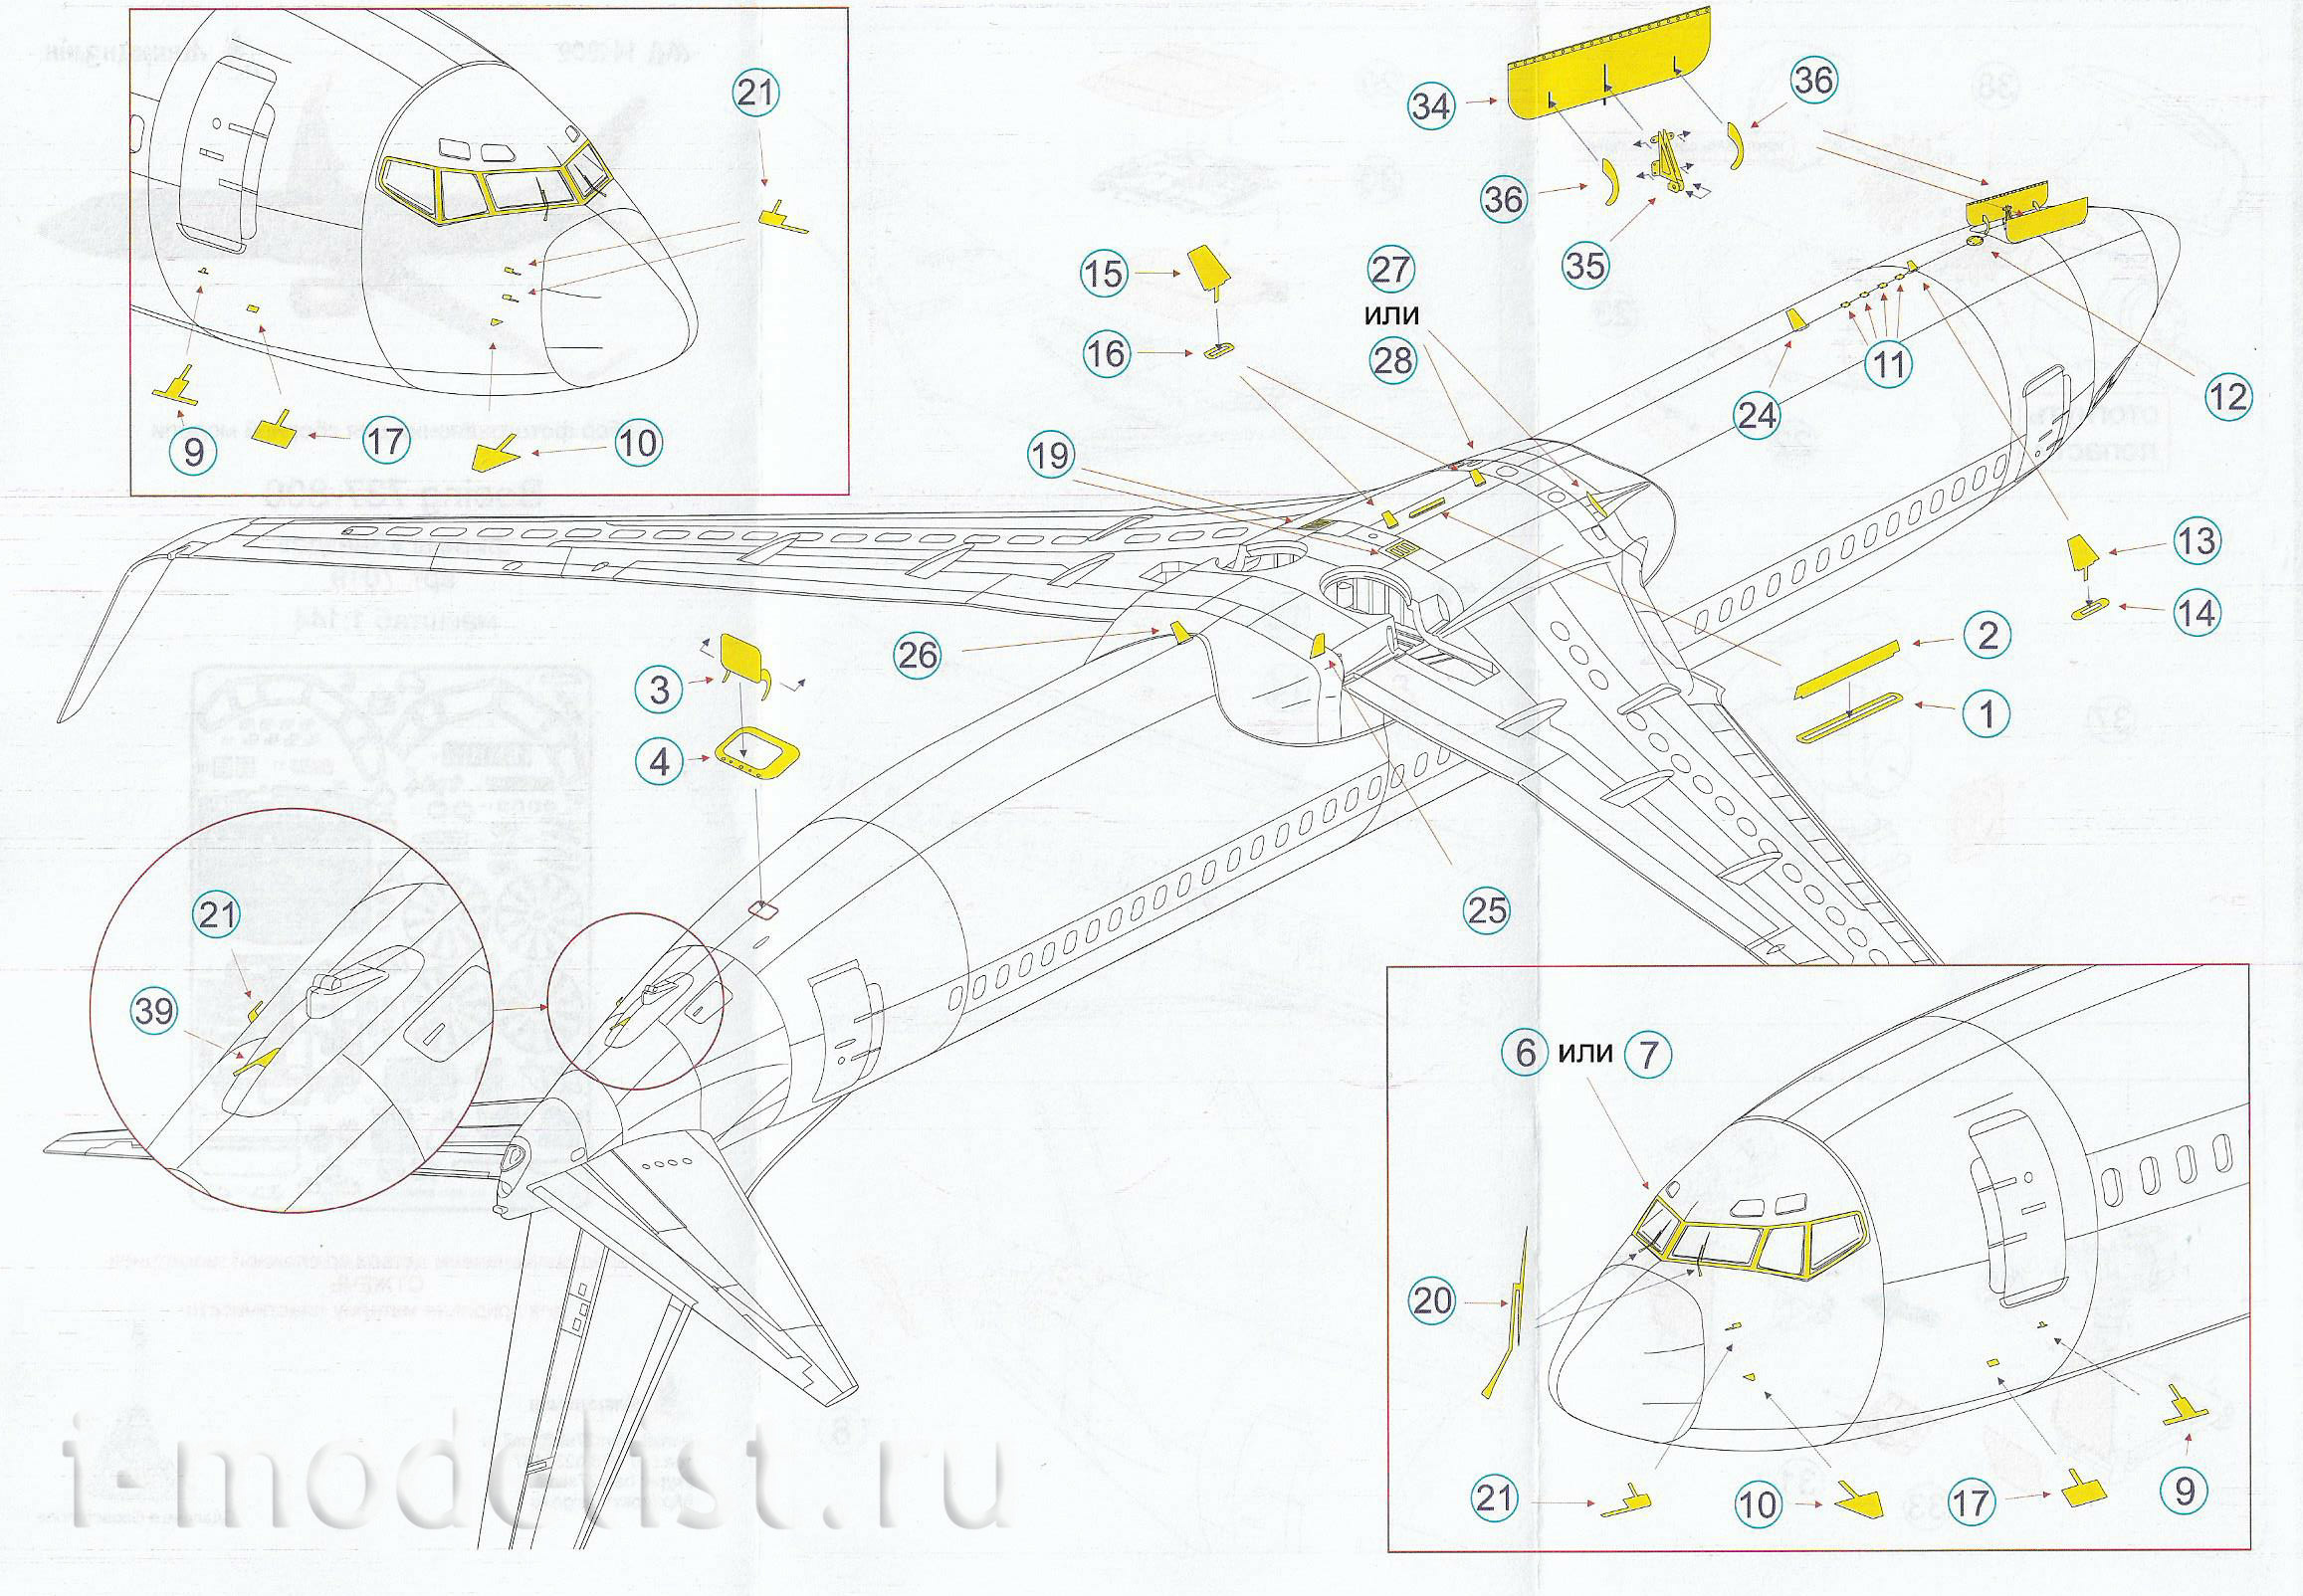 144202 Microdesign 1/144 Boing 737-800 from Zvezda